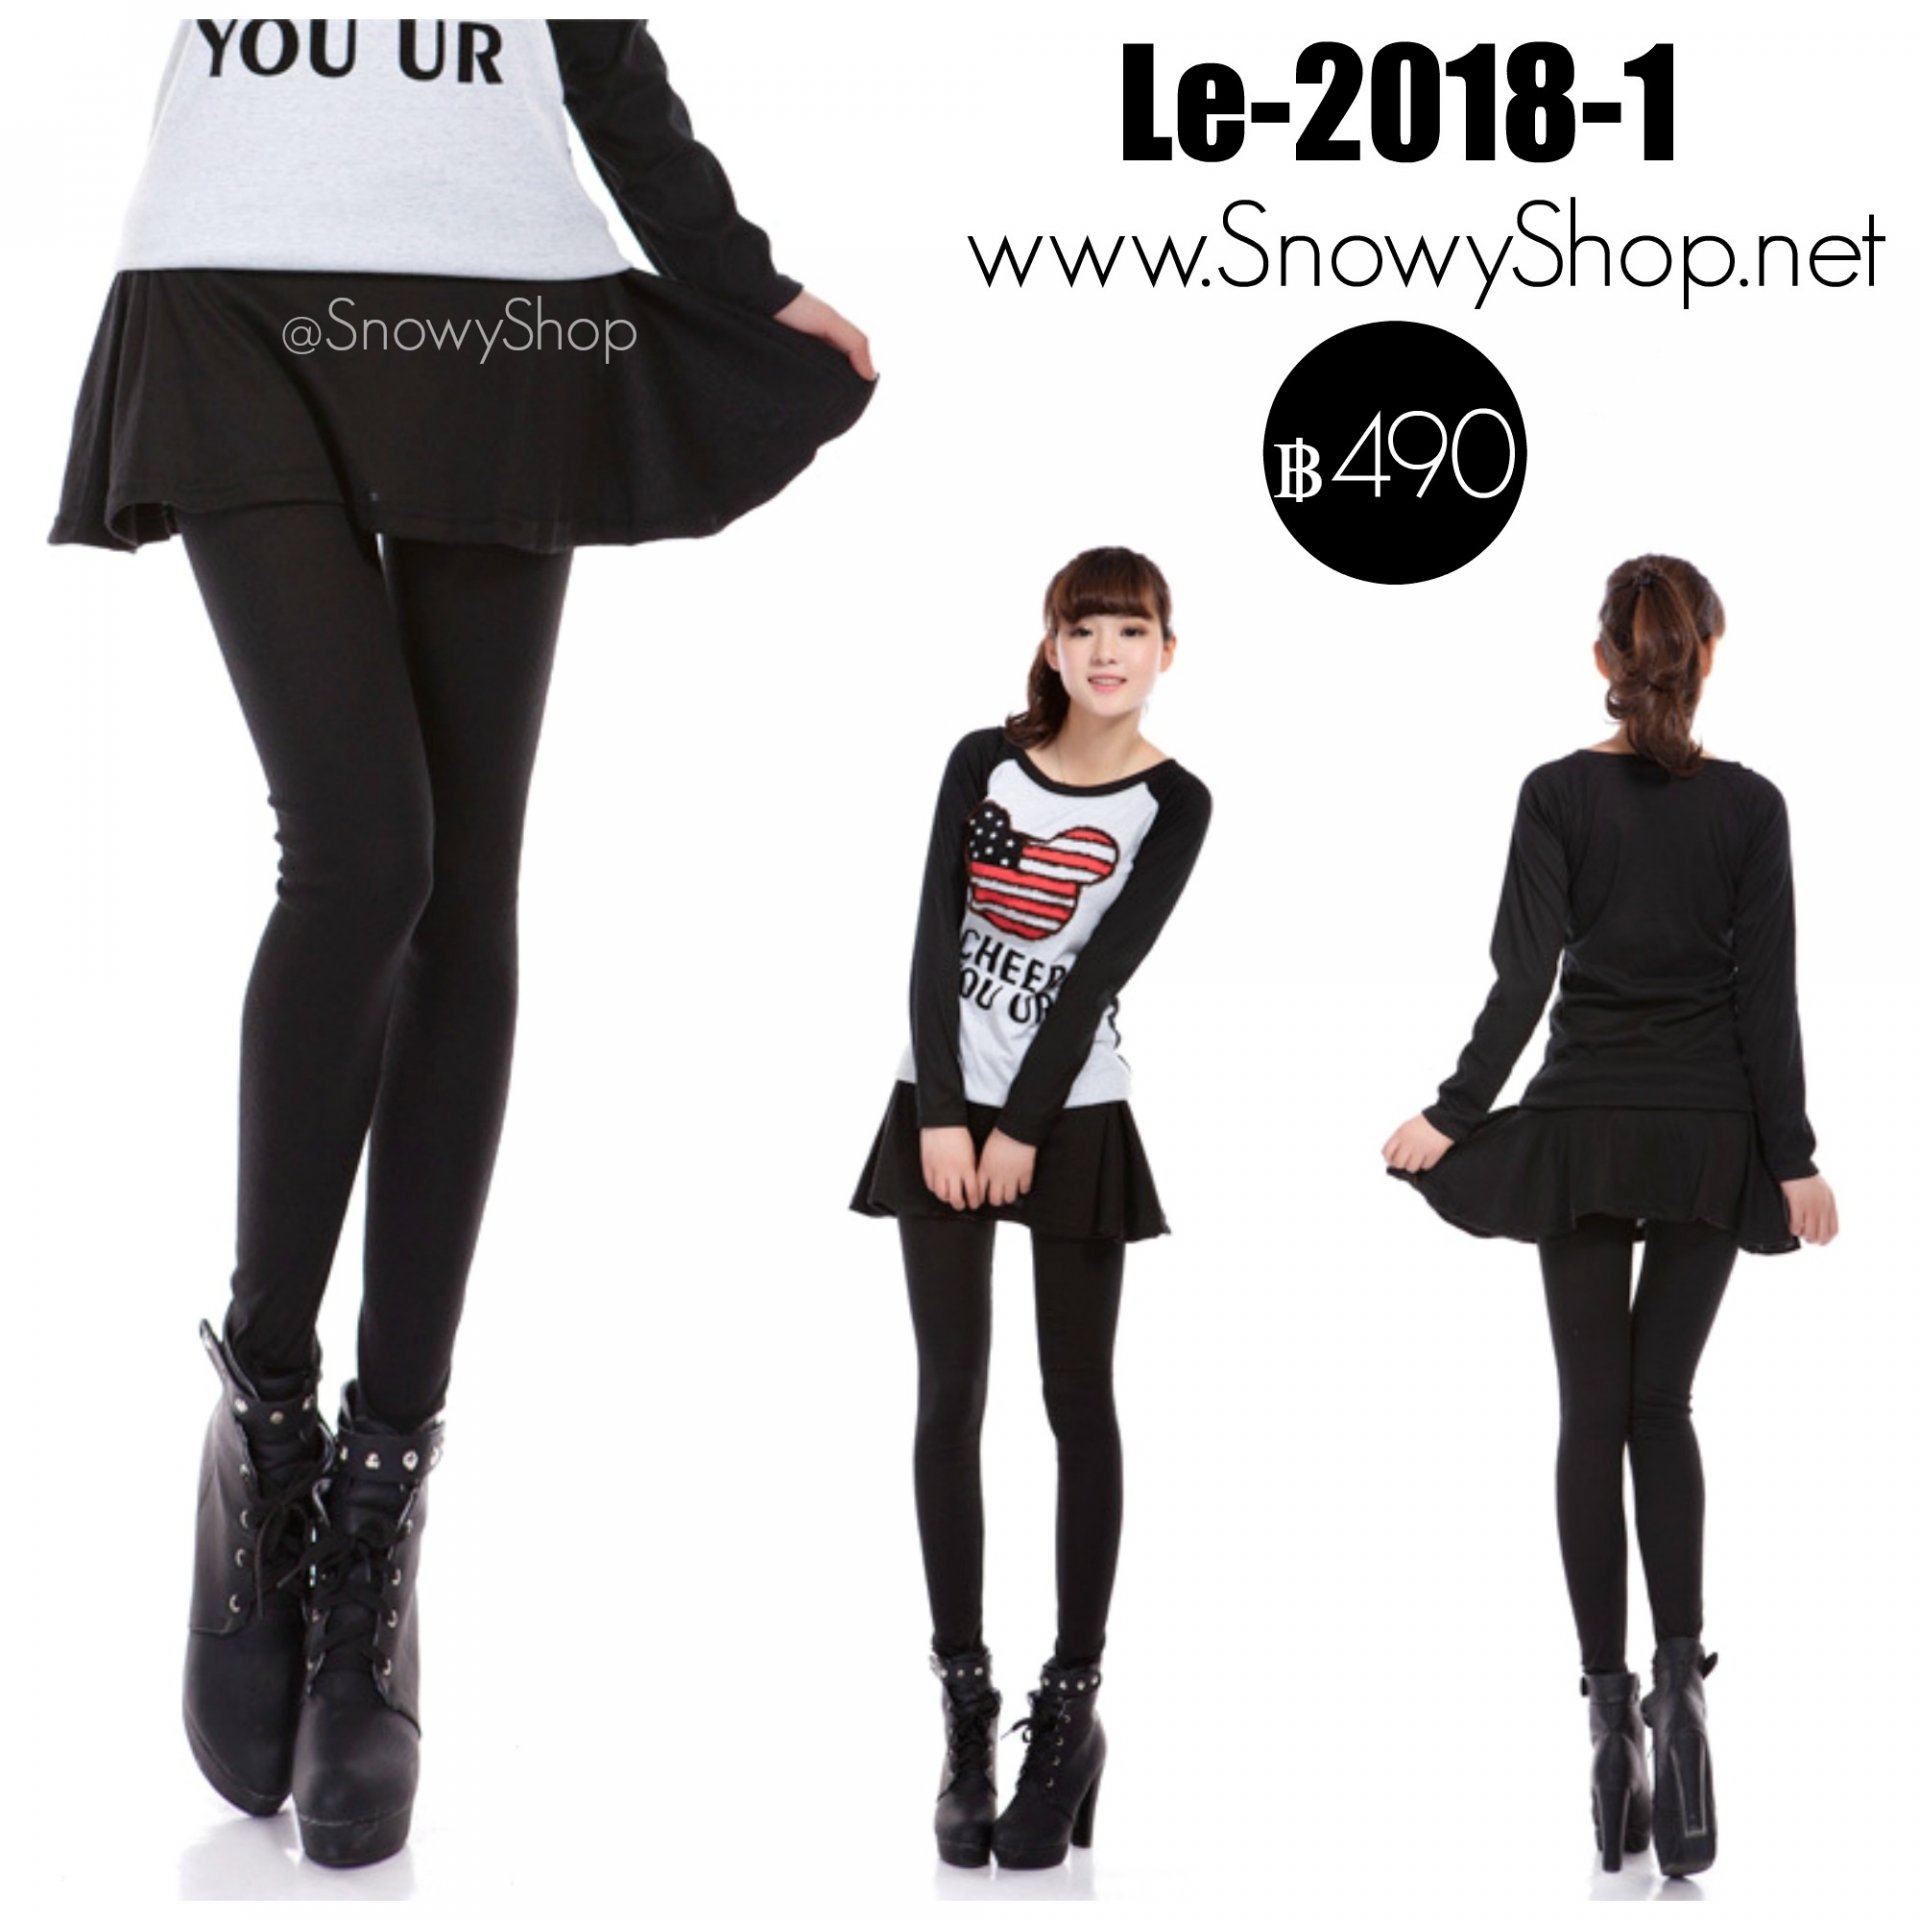 [พร้อมส่ง S XL 2XL] [Le-2018-1] เลกกิ้งกระโปรงสีดำ ผ้าคอตตอนกระโปรงบานใส่สบายมากๆ